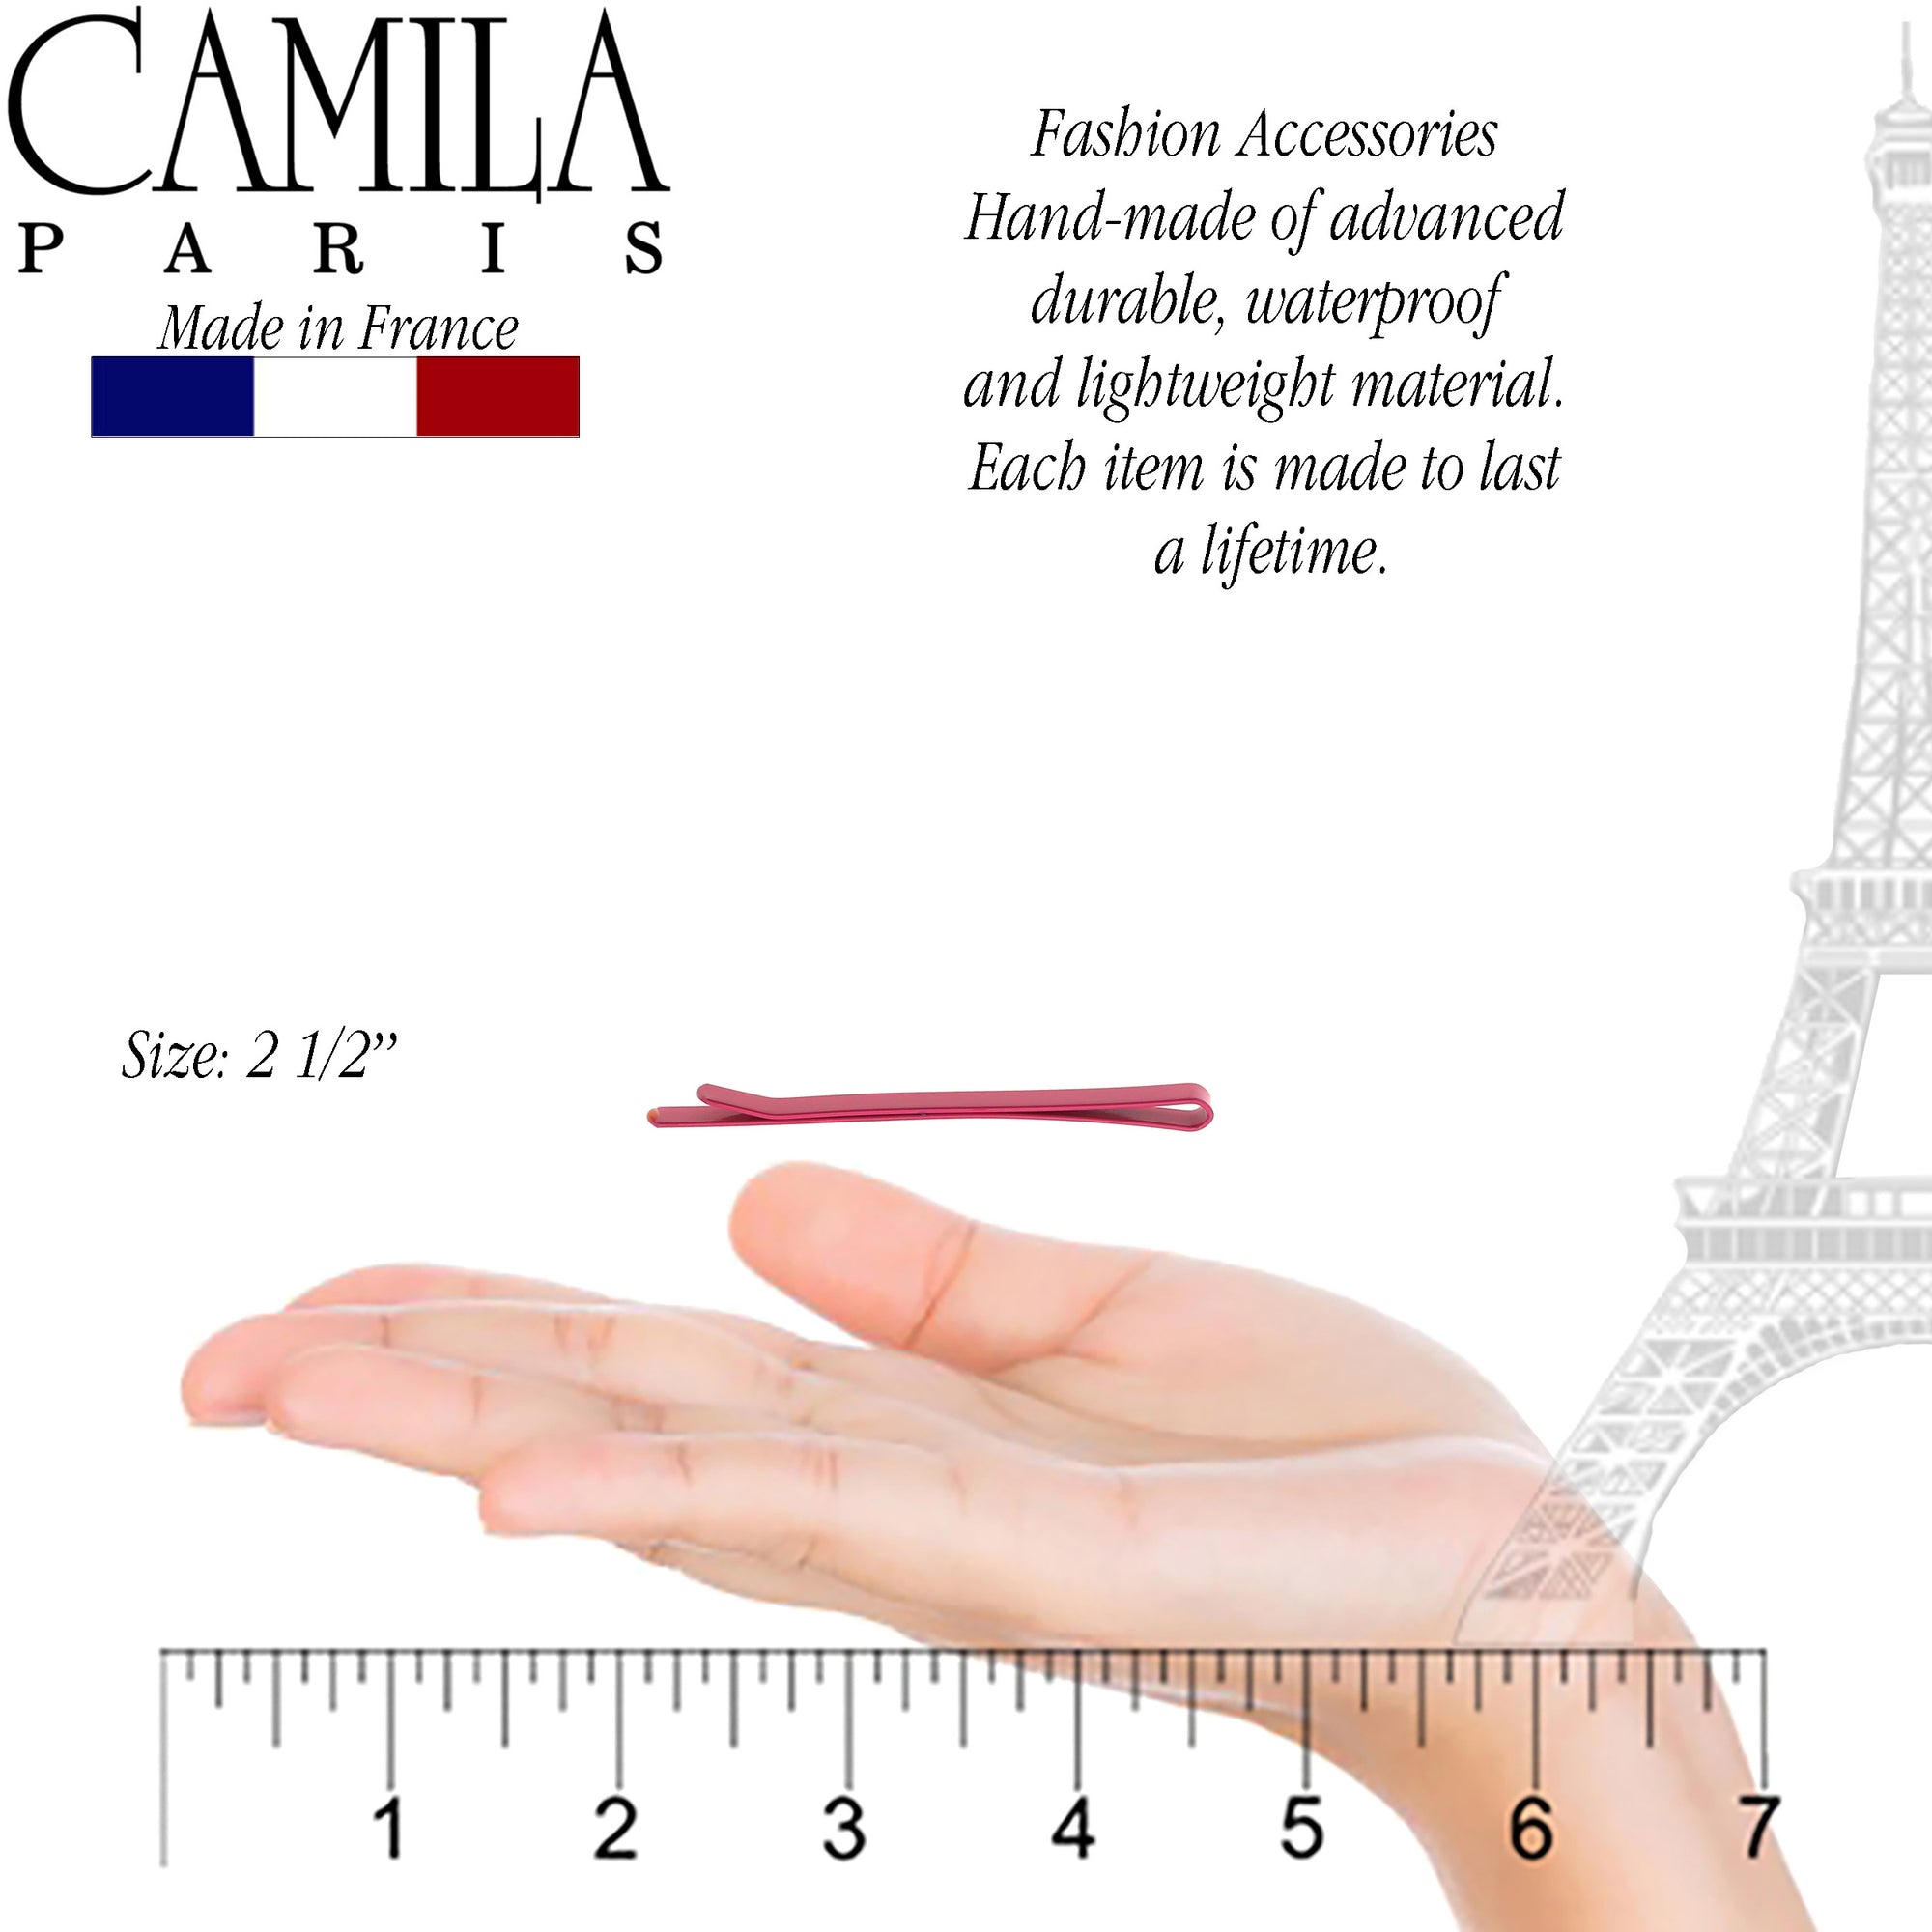 Camila Paris Thin Metal Hair Pins Slides - 7 Pack